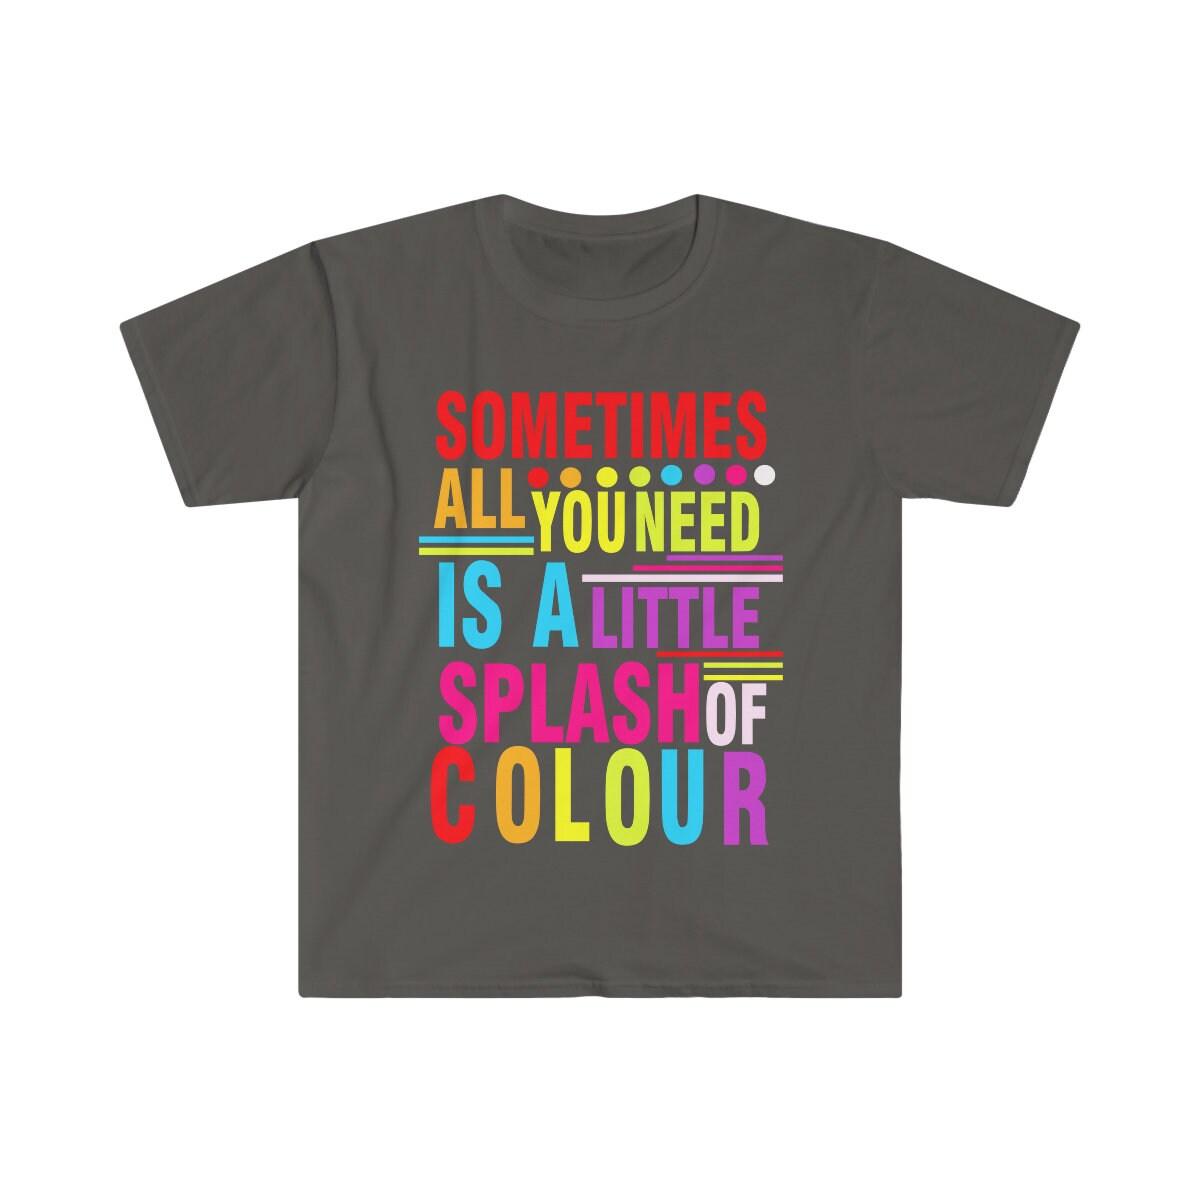 कभी-कभी आपको रंगीन शर्ट, सकारात्मक वाइब्स, प्रेरक ग्राफिक शर्ट, रंगीन शर्ट, समर बीच शर्ट की थोड़ी सी झलक की आवश्यकता होती है - प्लसमिनस्को.कॉम